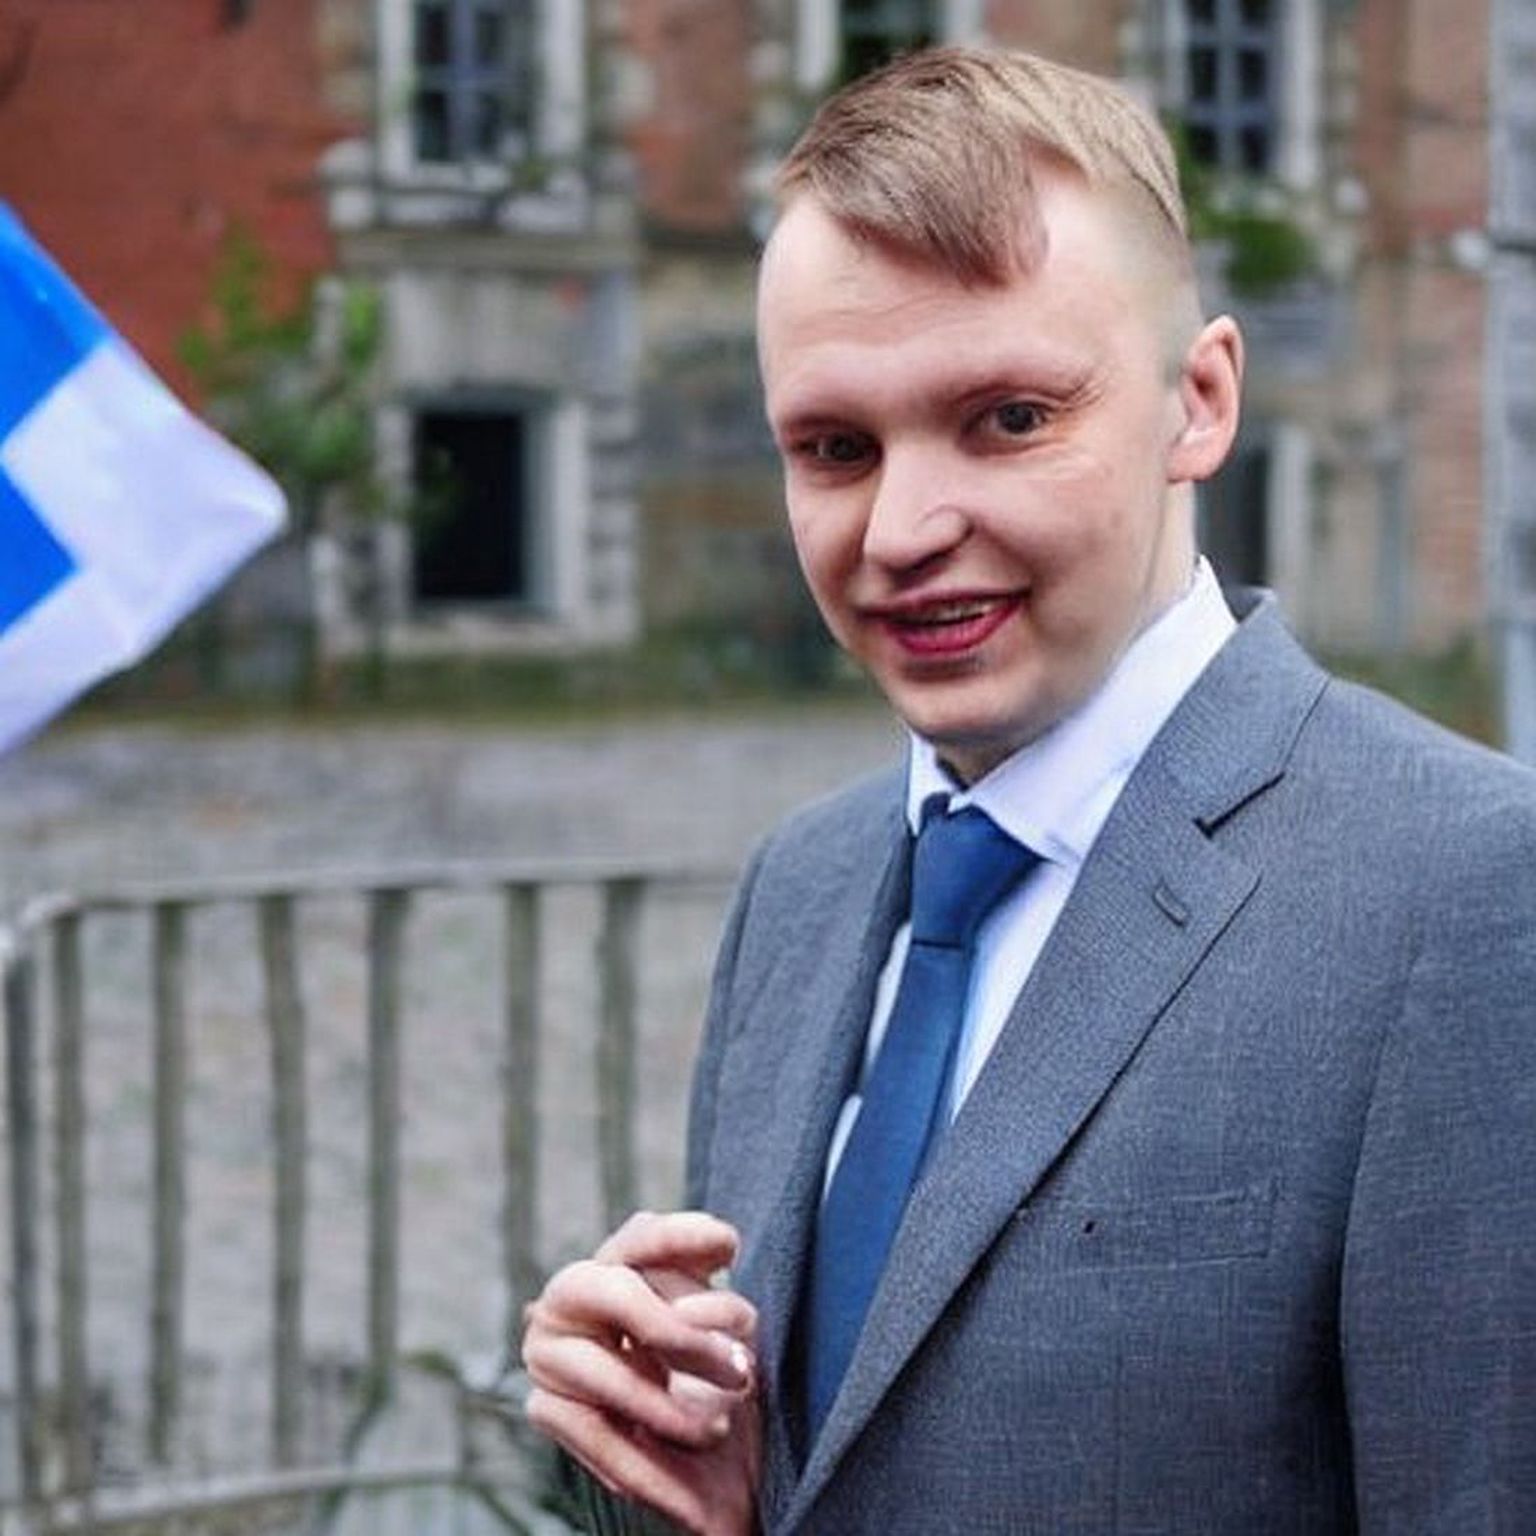 Lastes tehisintellektil Stable Diffusion luua pildi tuntud Eesti poliitikust valimiste eel, paneb masin kokku sellise kollaaži. Kui palju on tulemuses päris inimest ja kui palju väljamõeldist, seda pole veel võimalik ette ennustada, sest masin käitub pealtnäha juhuslikult.